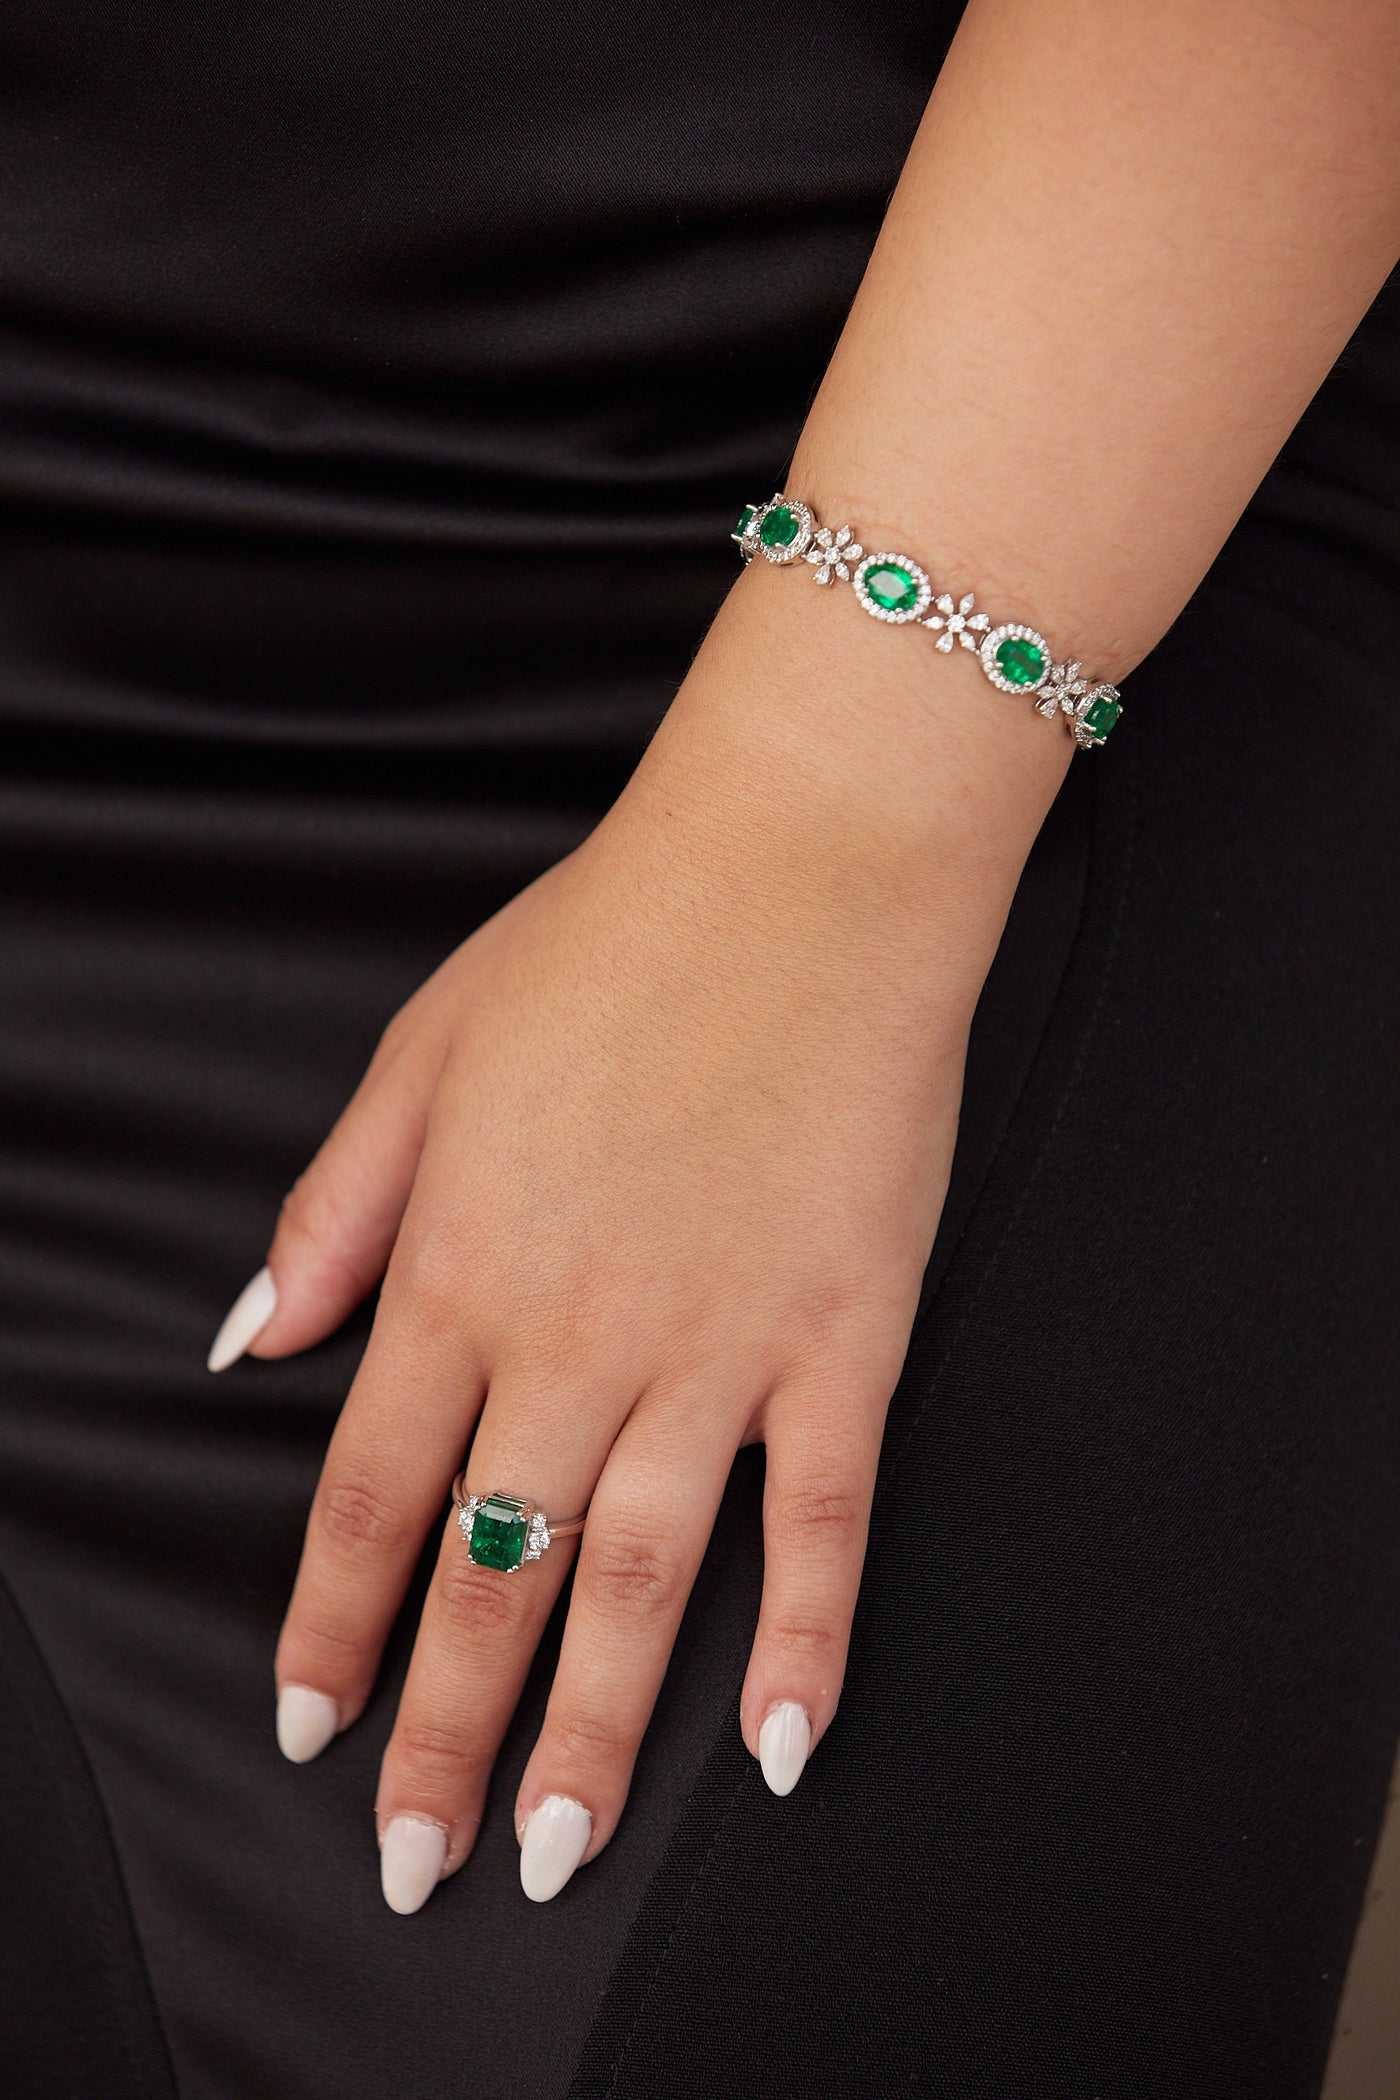 Emerald Oval & Diamond Bracelet In 18K White Gold